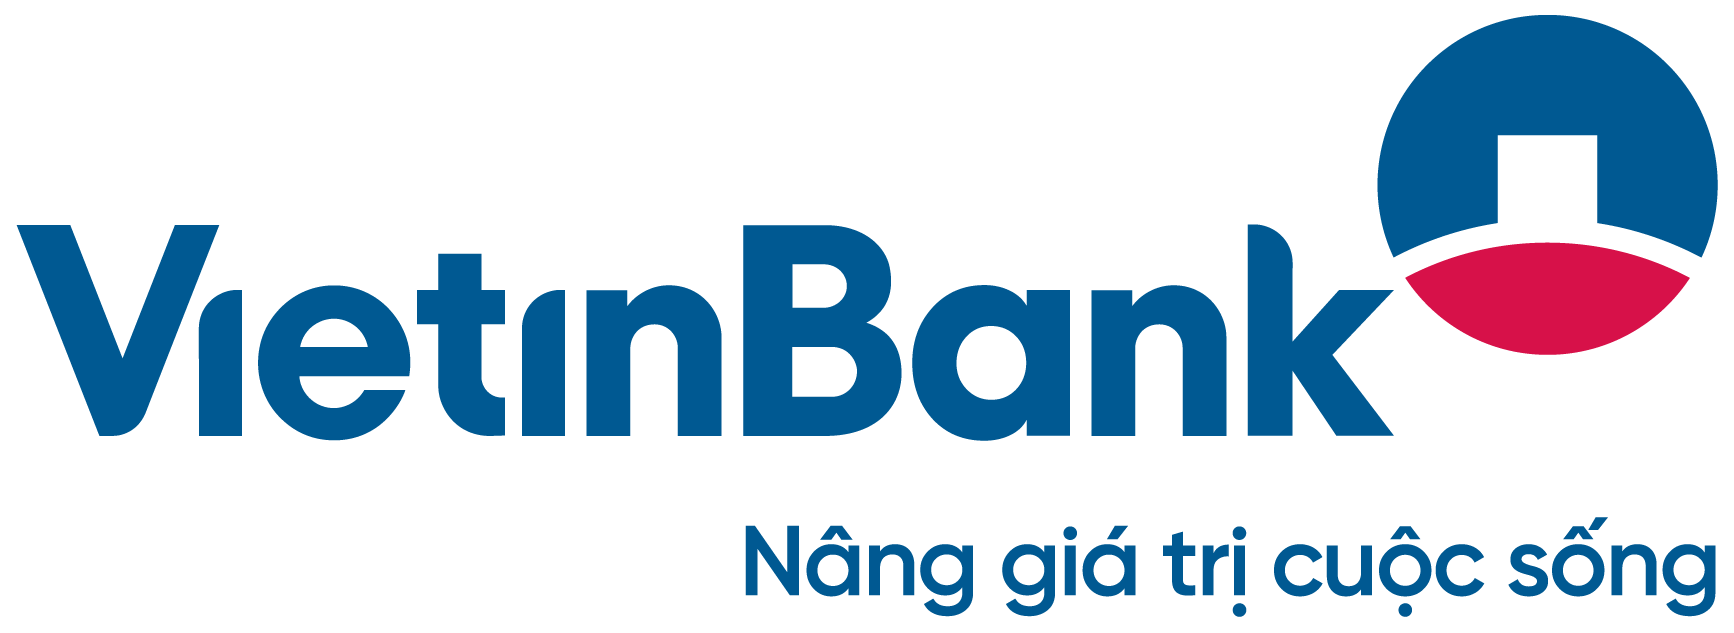 Mở tài khoản phong tỏa Vietinbank du học Đức